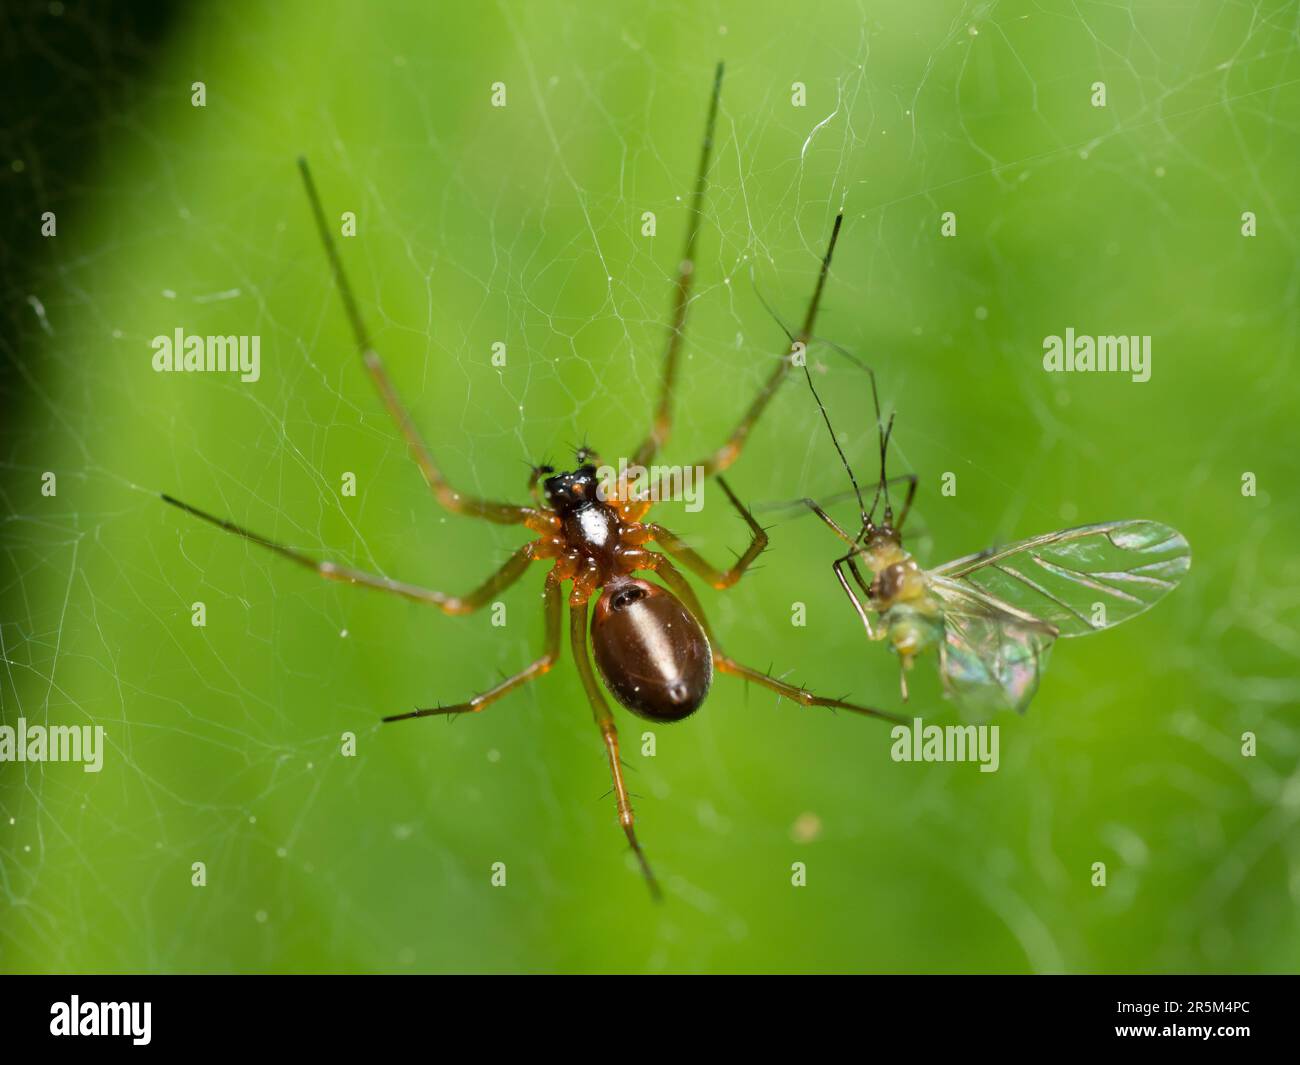 Der stille Jäger: Eine geduldige Spinne lauert in ihrem komplizierten Netz, bereit für Beute, um sich in die Nähe zu wagen, und zeigt das empfindliche Gleichgewicht der Geduld der Natur Stockfoto